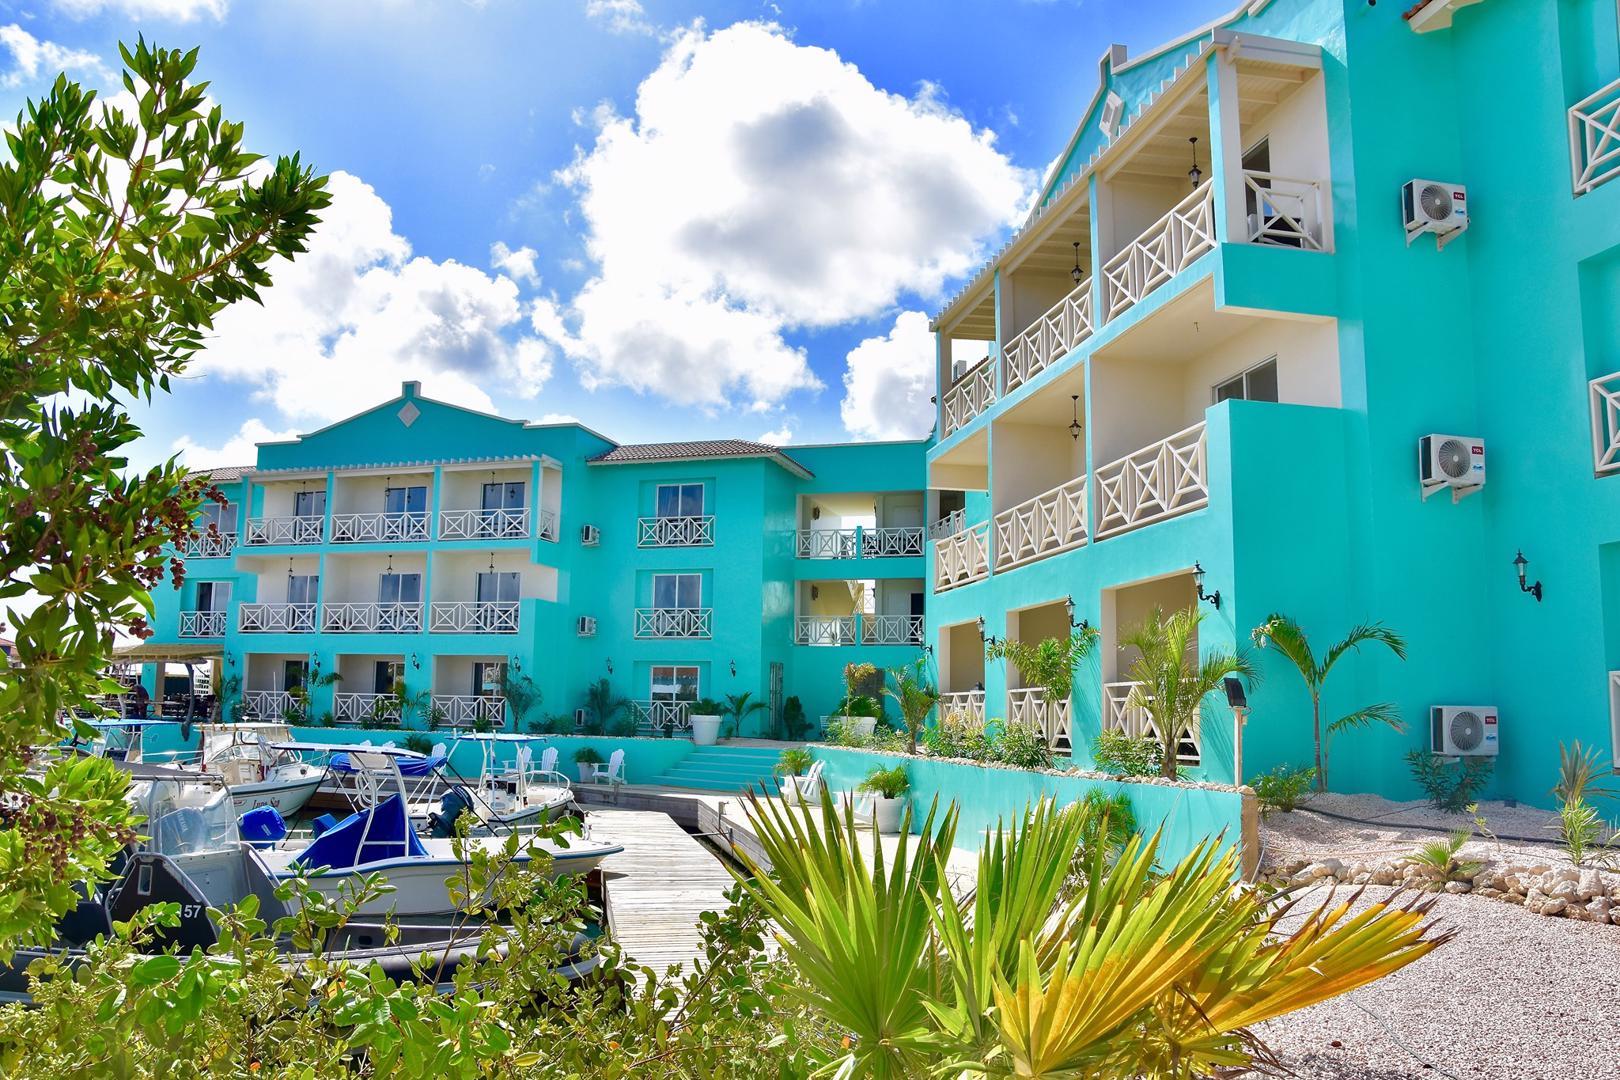 Ocean Breeze Boutique Hotel en Marina - Kralendijk - Bonaire